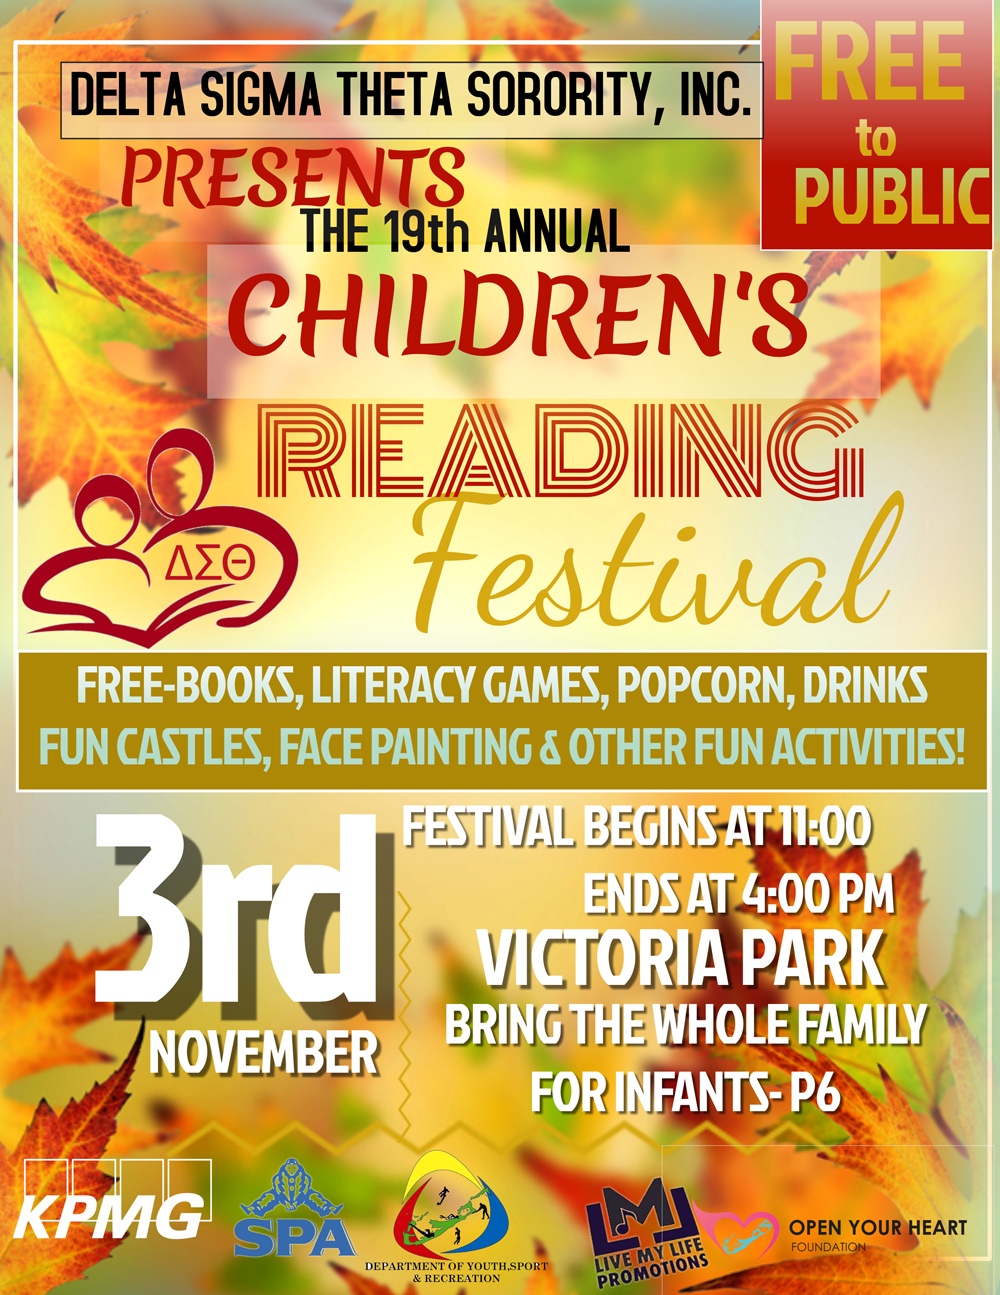 Children’s Reading Festival Bermuda Nov 2 2018 (4)